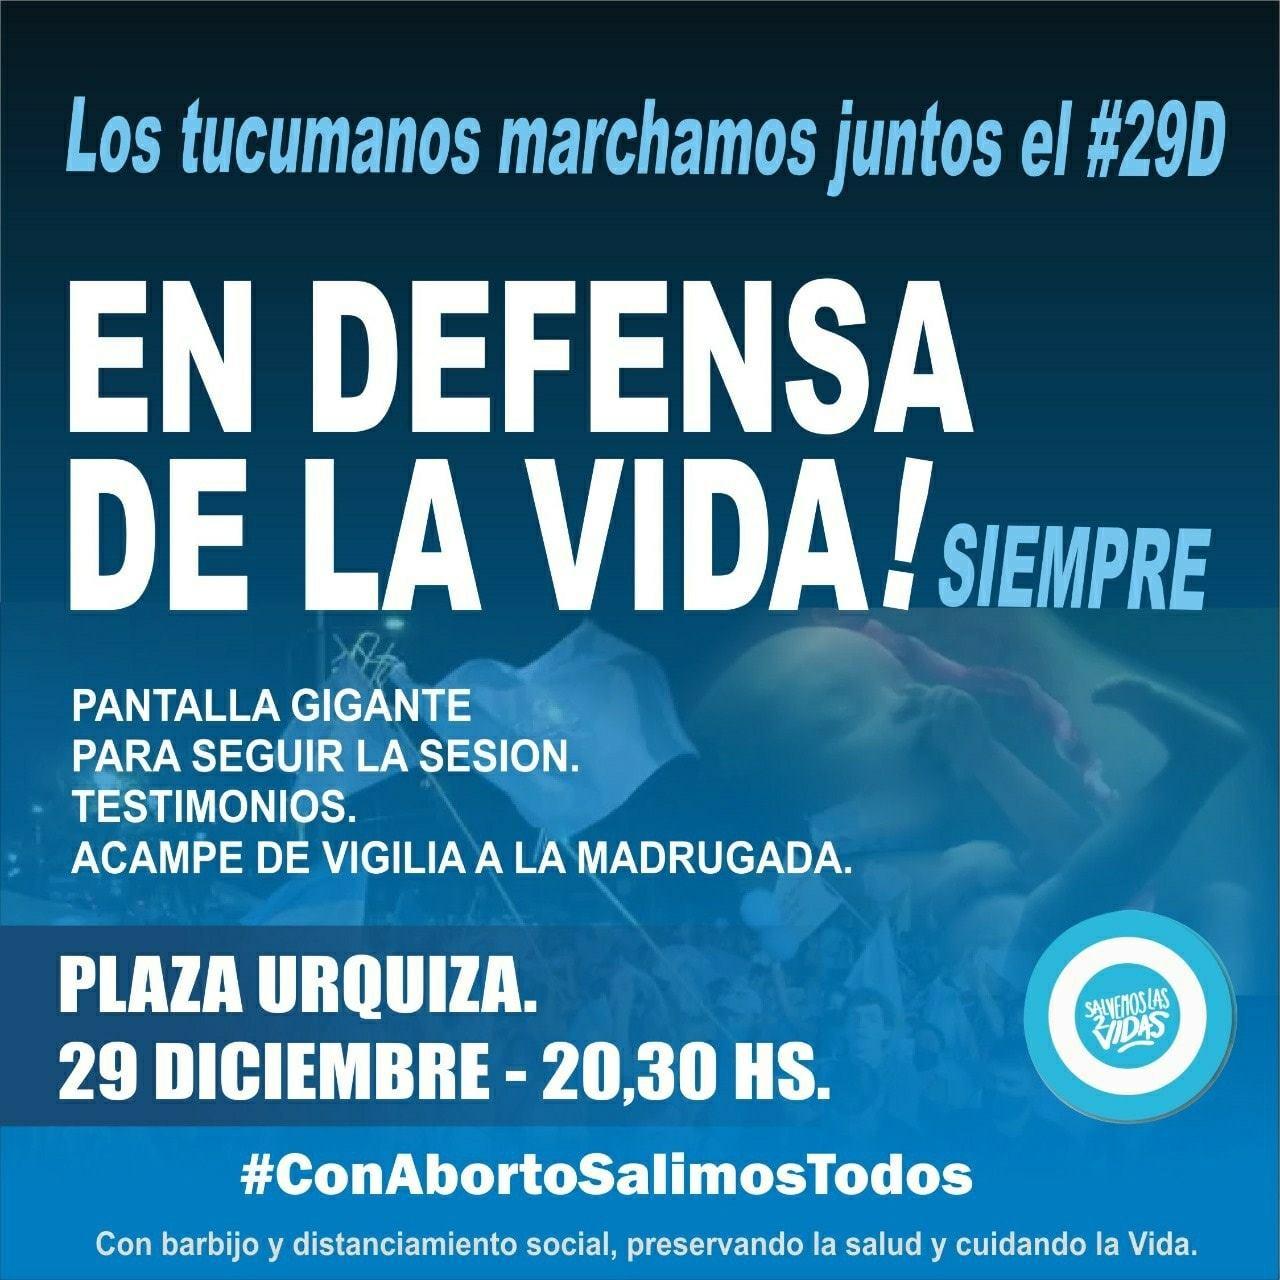 En dos plazas de Tucumán habrá vigilia en favor y en contra del aborto legal